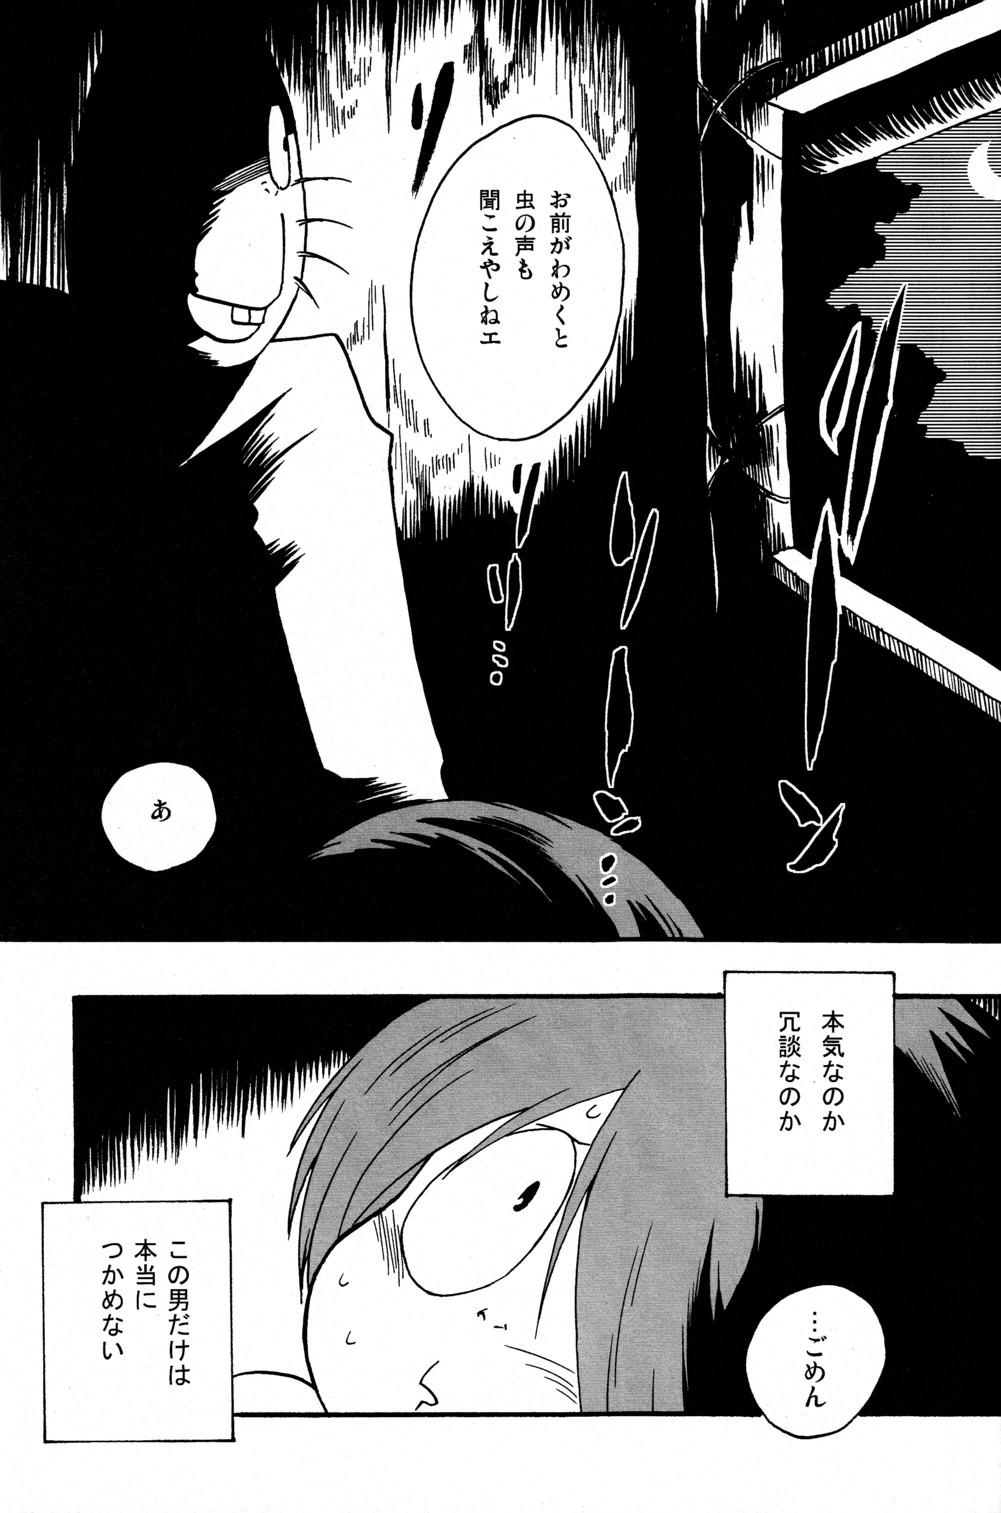 Peituda Kawaisa Amatte Nantoka Hyakubai - Gegege no kitarou Hymen - Page 9